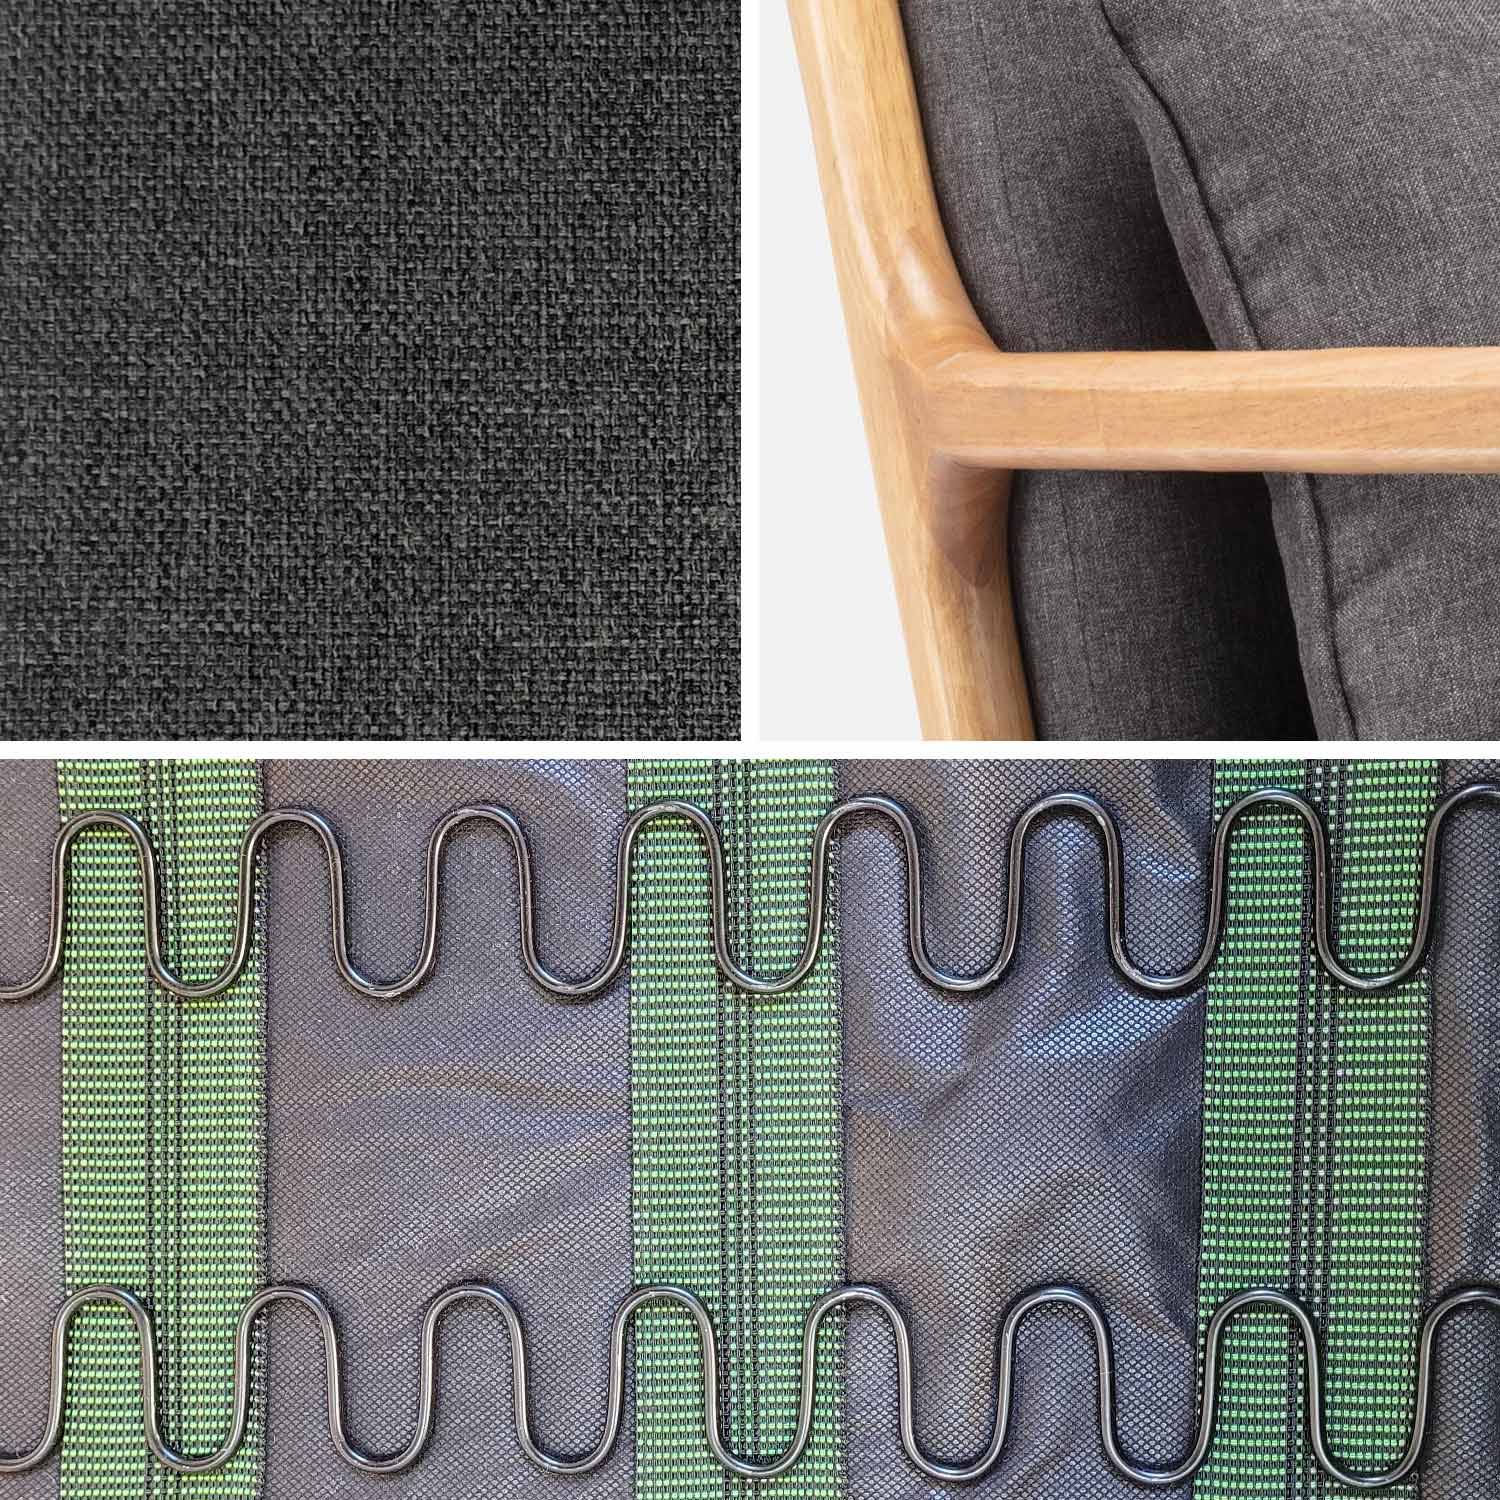 Fauteuil à bascule design en bois et tissu, 1 place, rocking chair scandinave, gris foncé Photo5